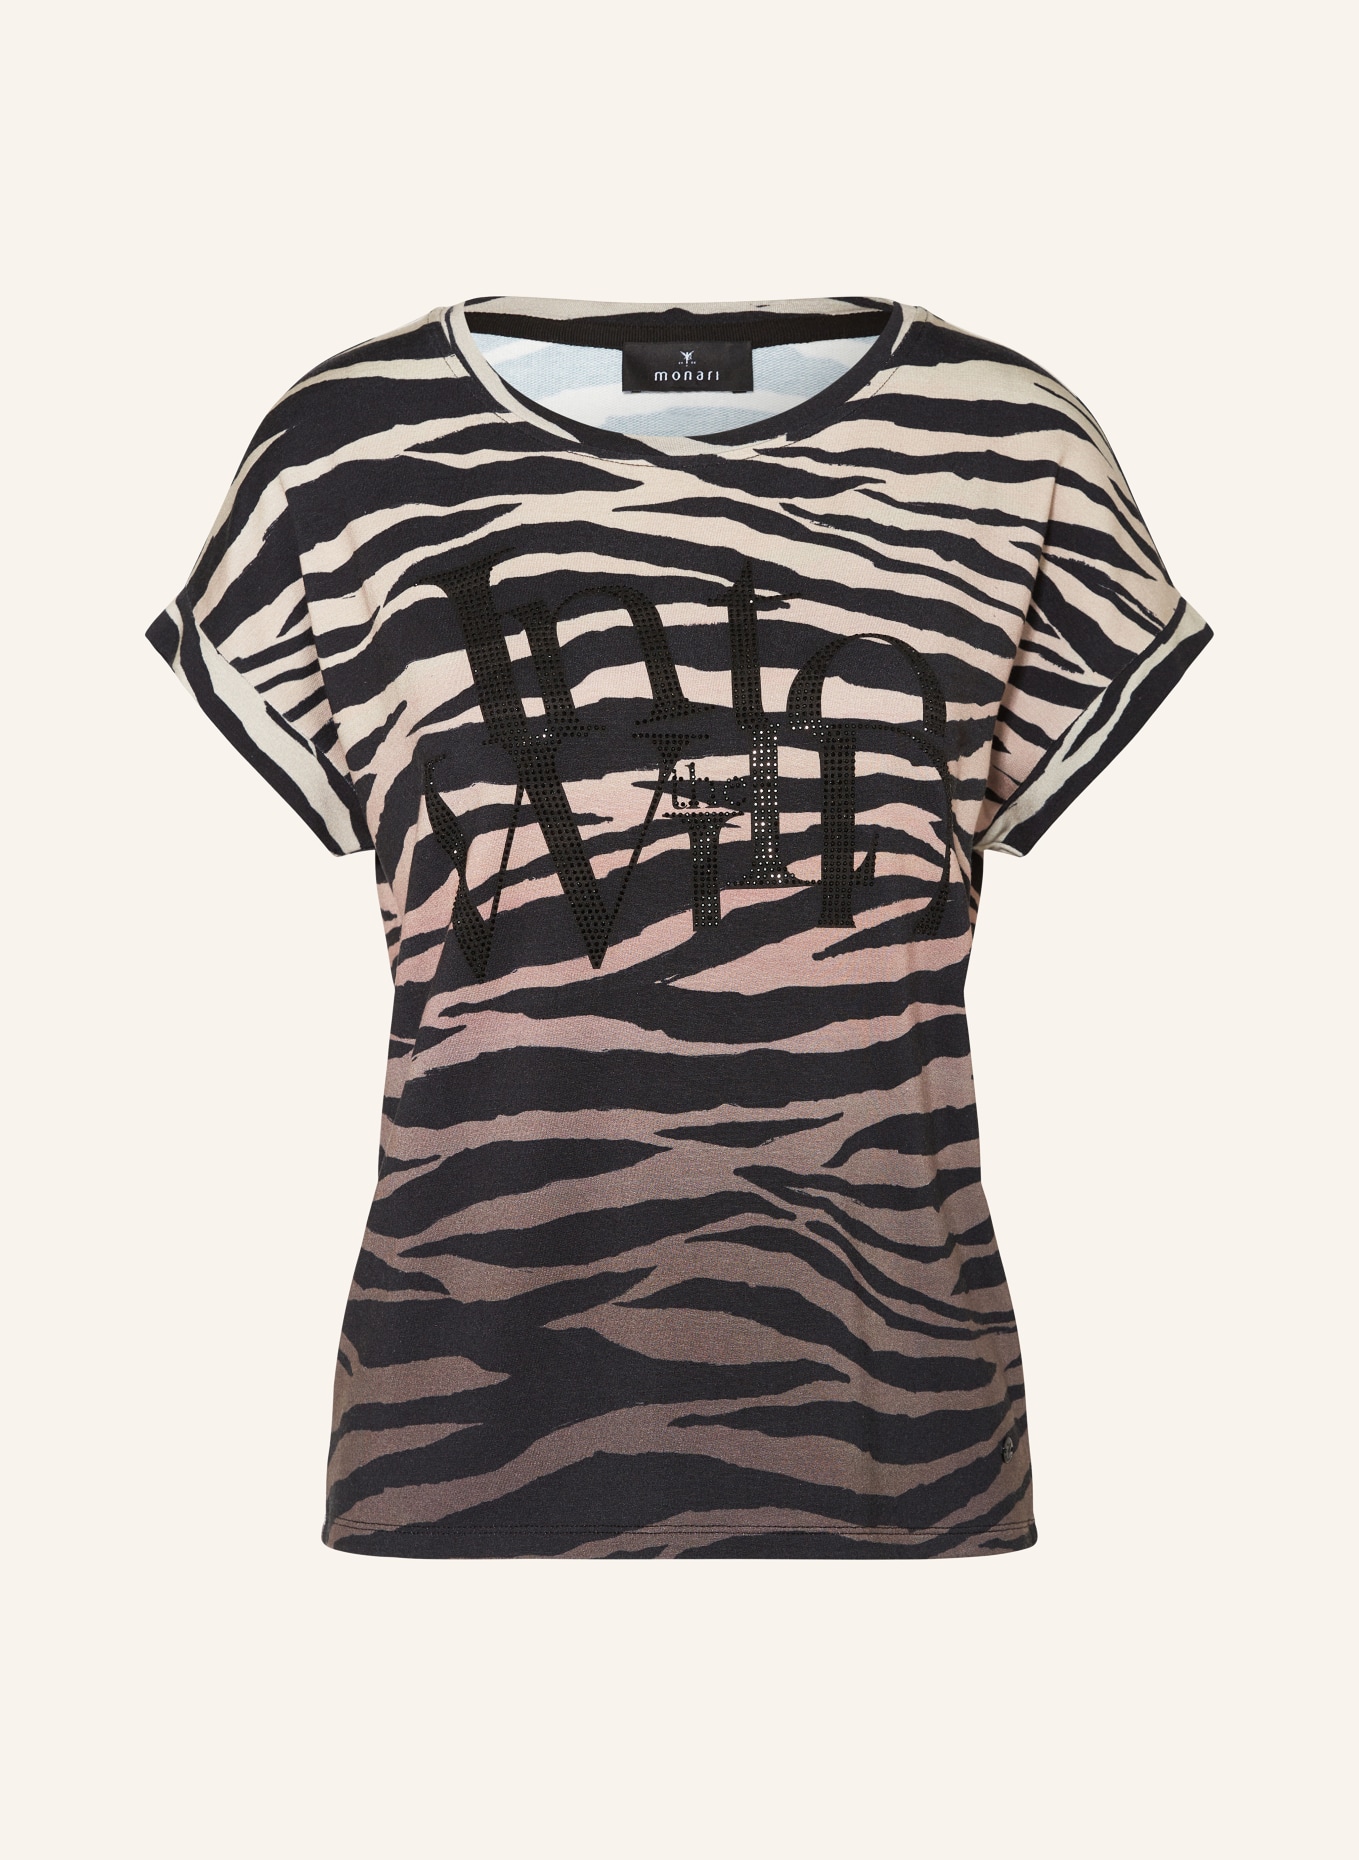 monari T-Shirt mit Schmucksteinen, Farbe: HELLBRAUN/ BRAUN/ SCHWARZ (Bild 1)